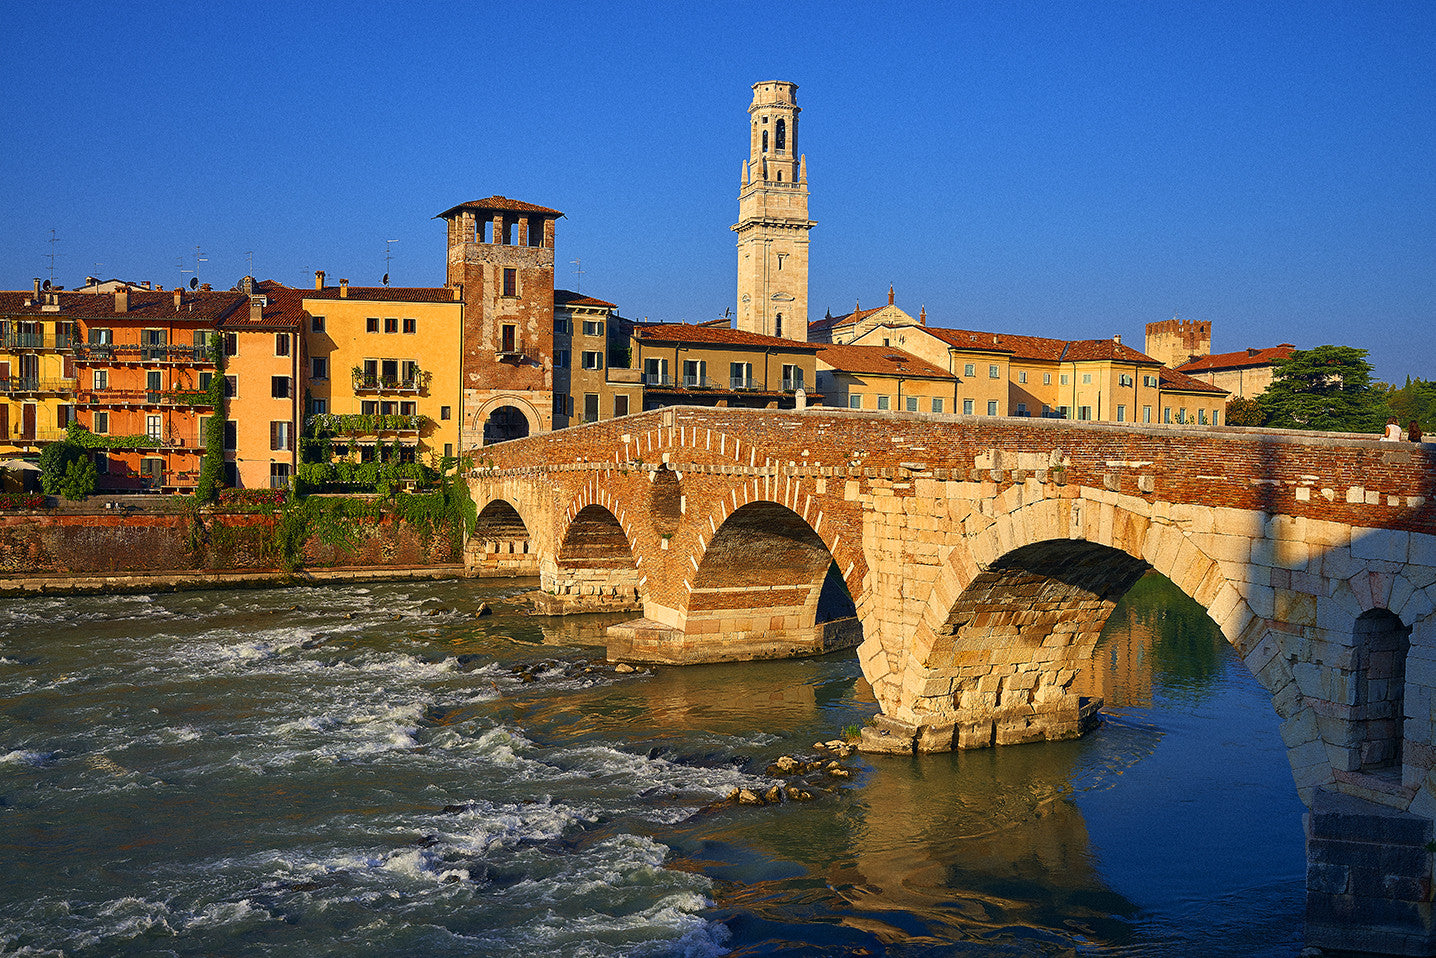 Ponte-Vecchia-Verona_2048x.jpg?v=1475890258